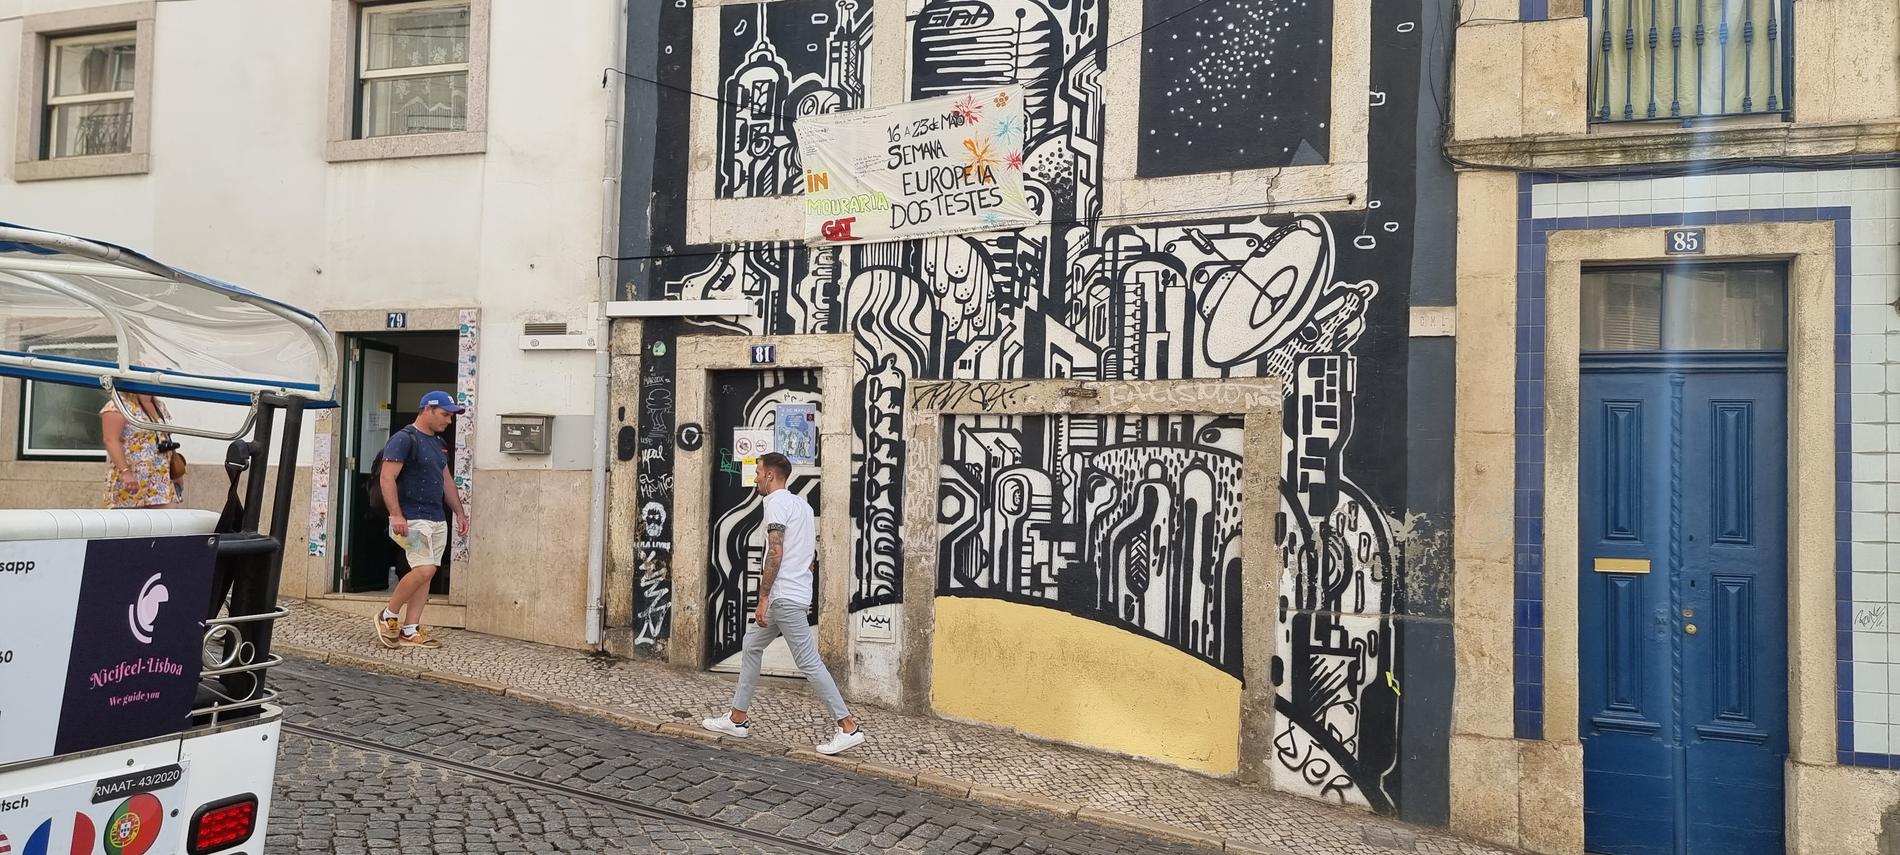 GAT:s lokal i Lissabon.